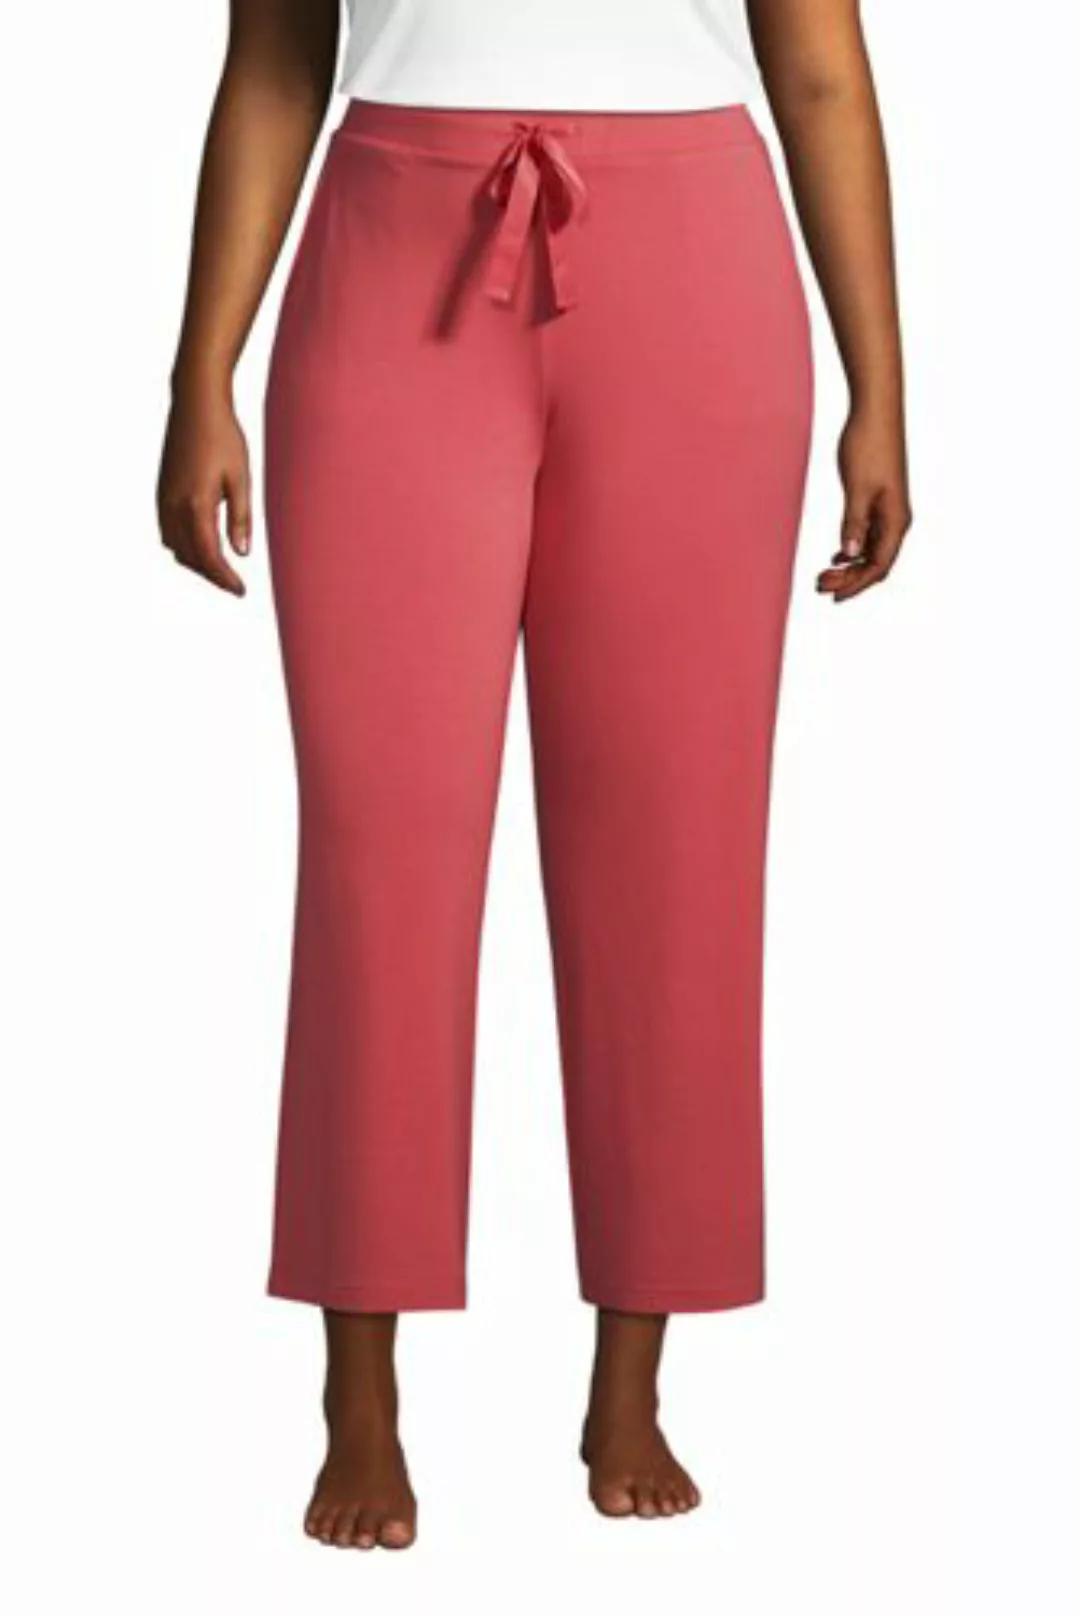 Weite Jersey Pyjama-Hose in 7/8-Länge in großen Größen, Damen, Größe: 52-54 günstig online kaufen